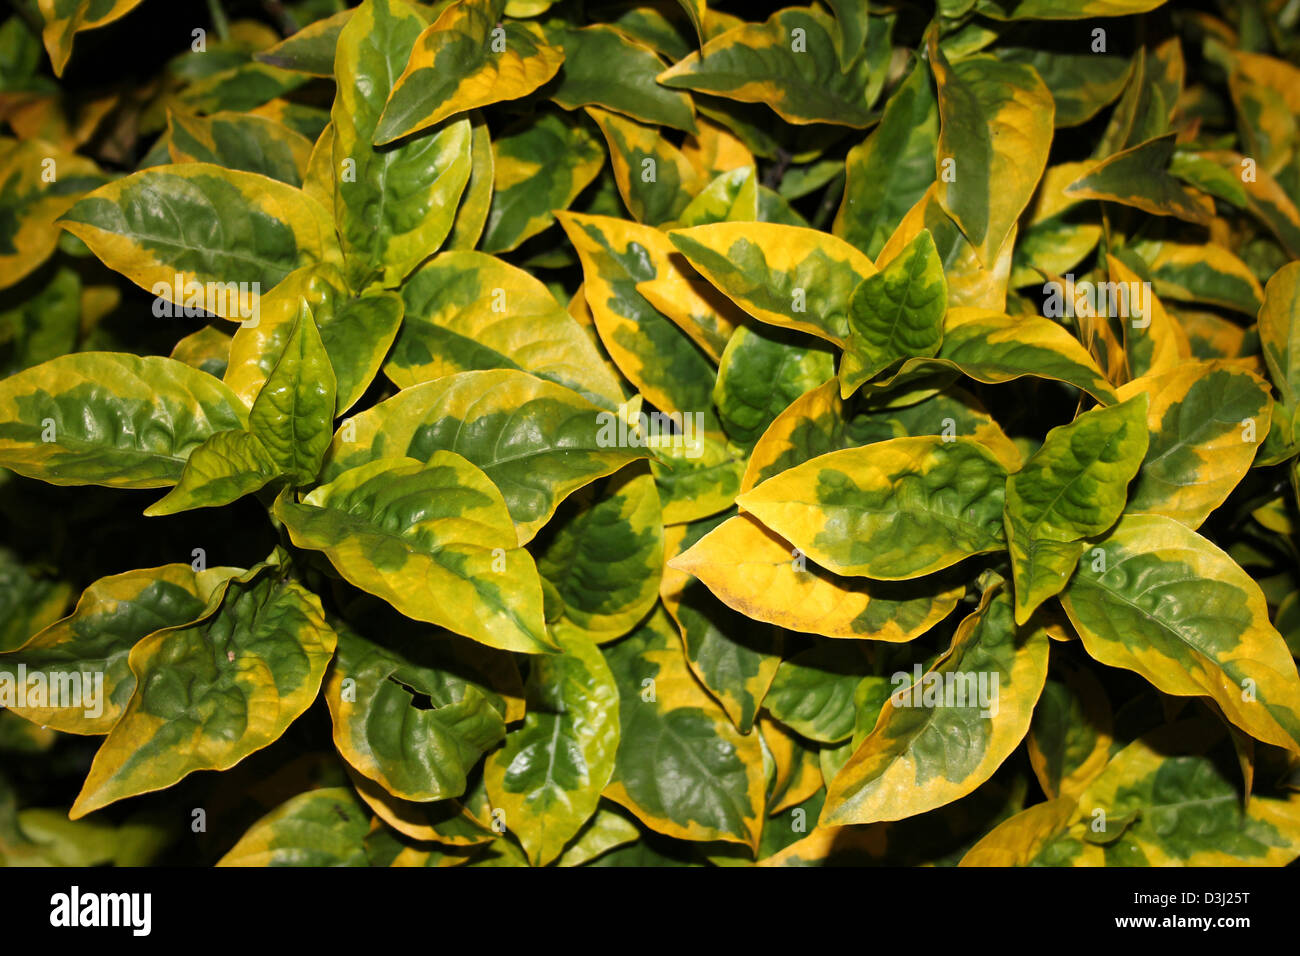 Amarillo y verde de las hojas del arbusto perenne Euonymus - Euonymus japonicus variedad Ovatus aureus Foto de stock